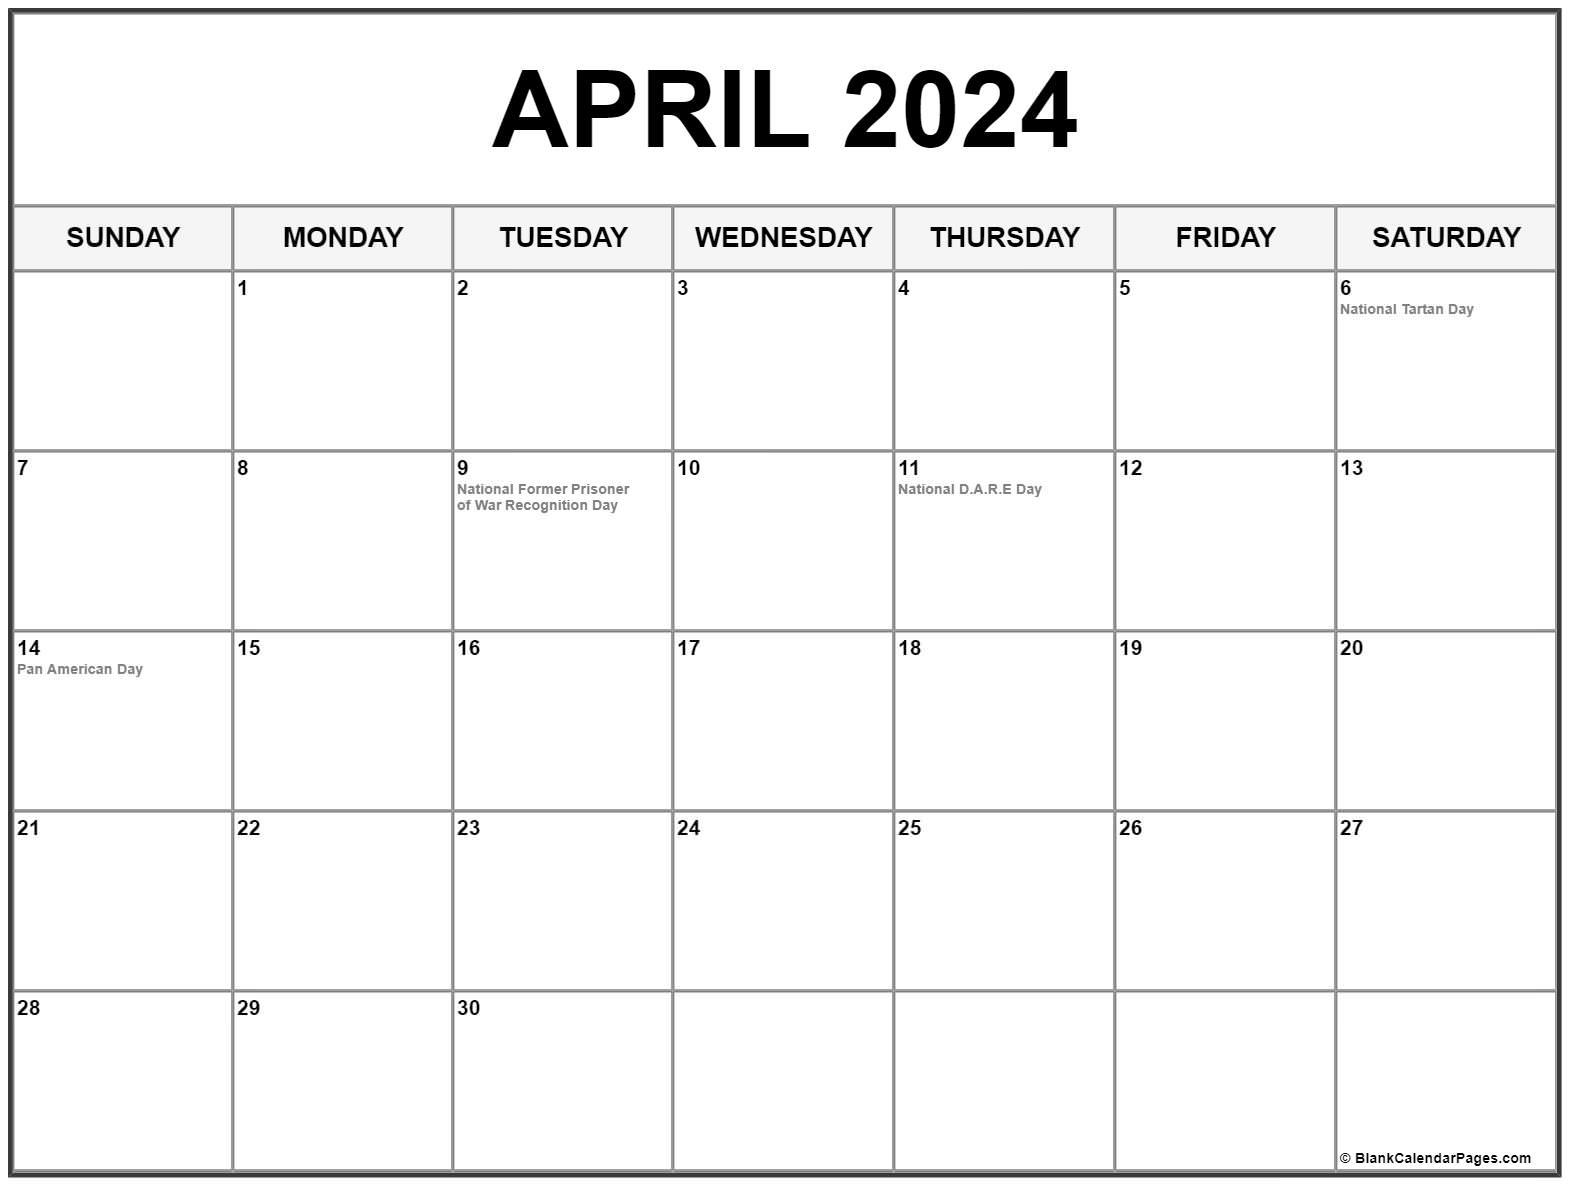 April 2021 Calendar With Holidays April 2021 calendar with holidays